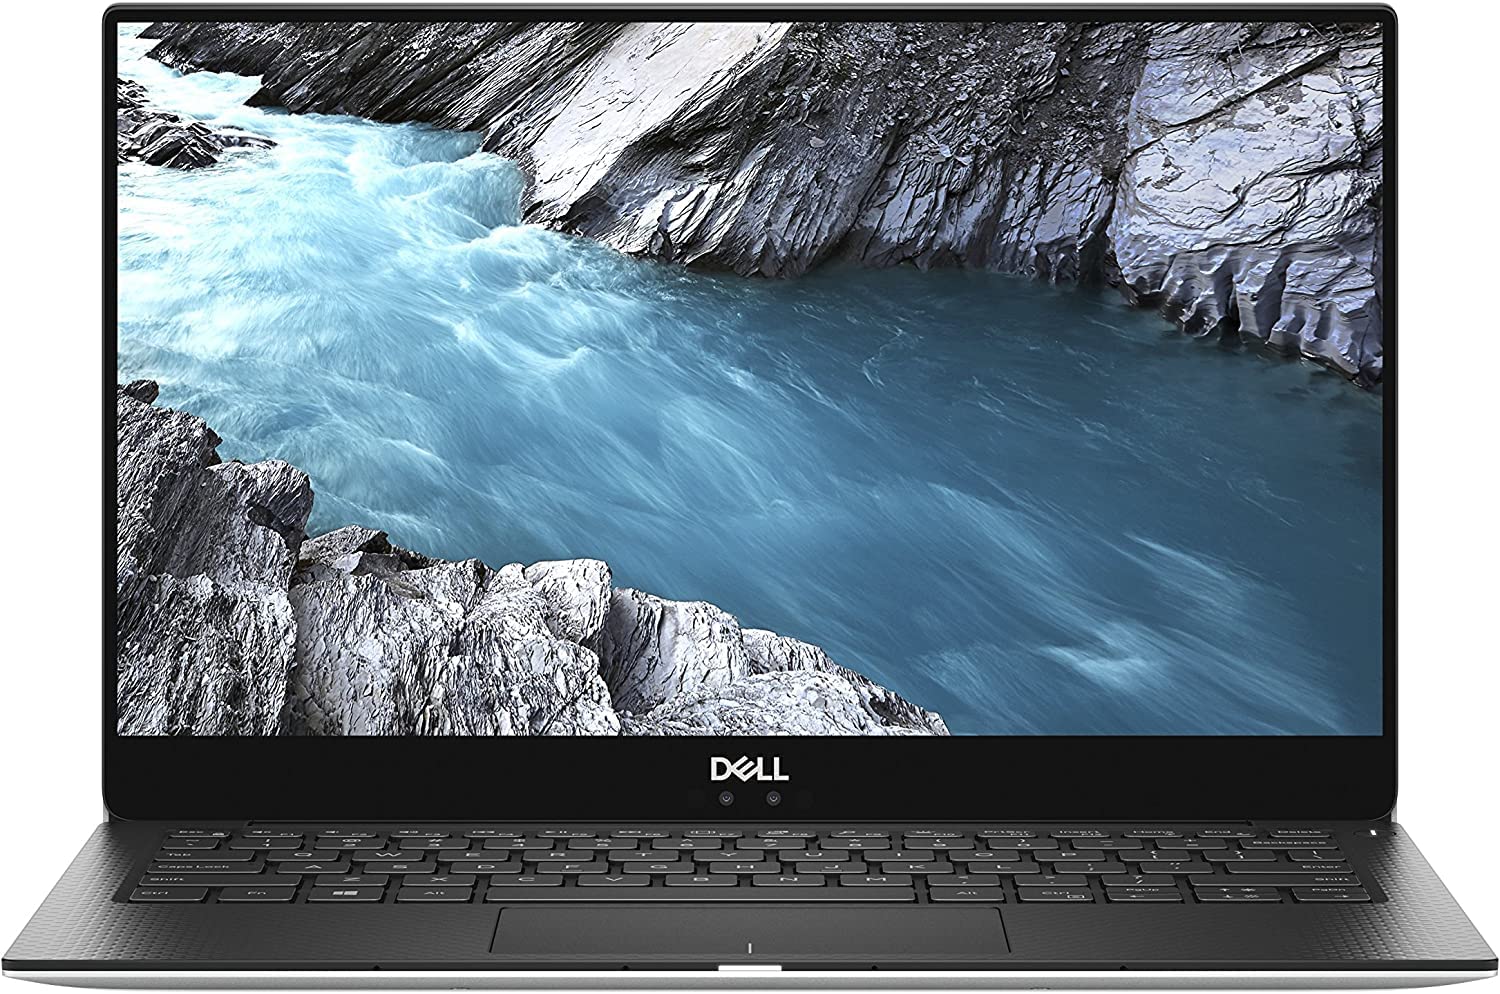 Dell XPS 13 9370 Laptop: Core i7-8550U, 8GB RAM, 256GB SSD, 13.3